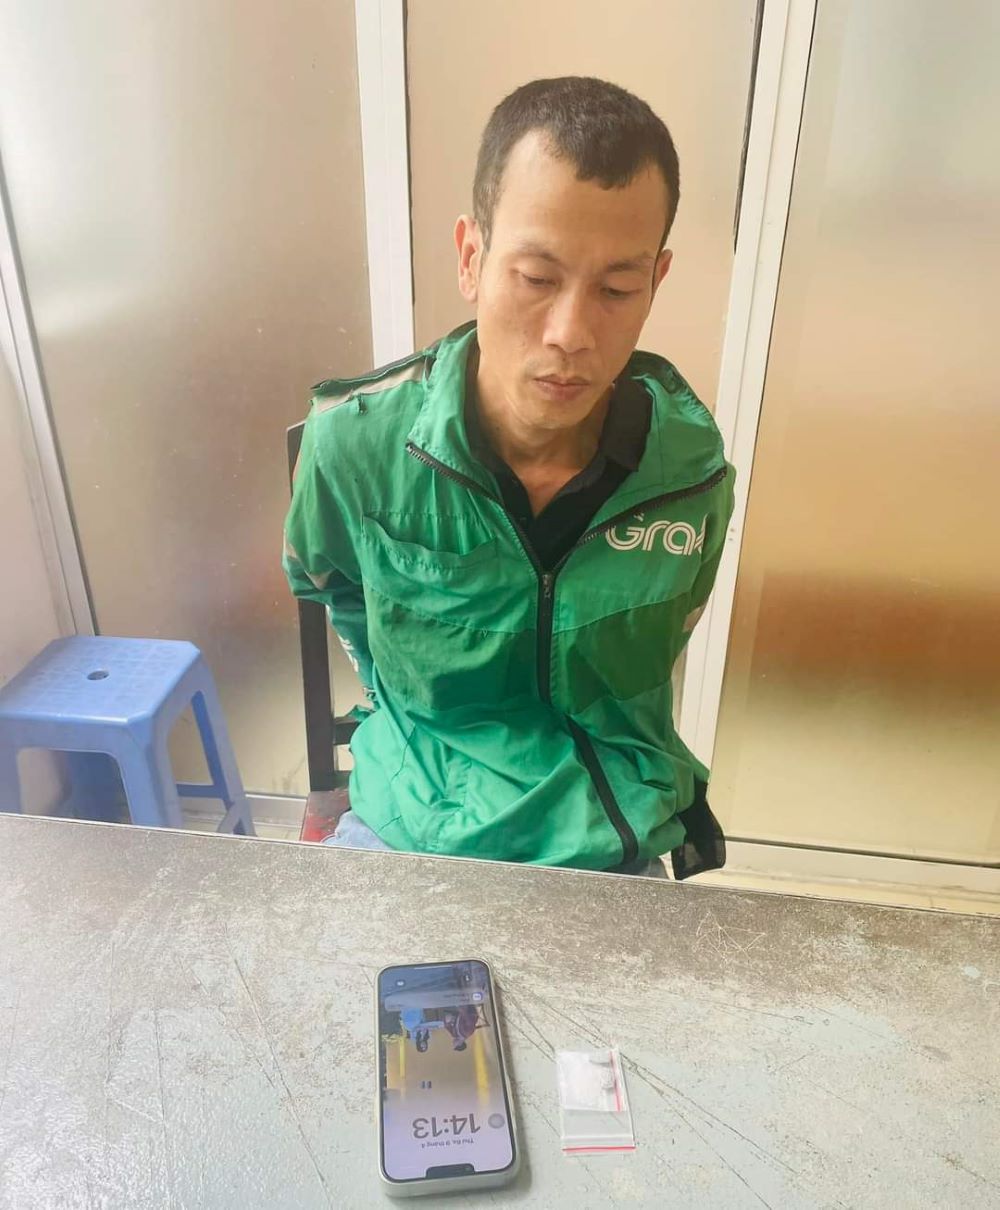 Đối tượng Huỳnh Văn Trọng (SN1989, trú quận Hải Châu, TP Đà Nẵng) bị bắt quả tang khi đang có hành vi mua bán trái phép chất ma túy. Ảnh: Doãn Quang